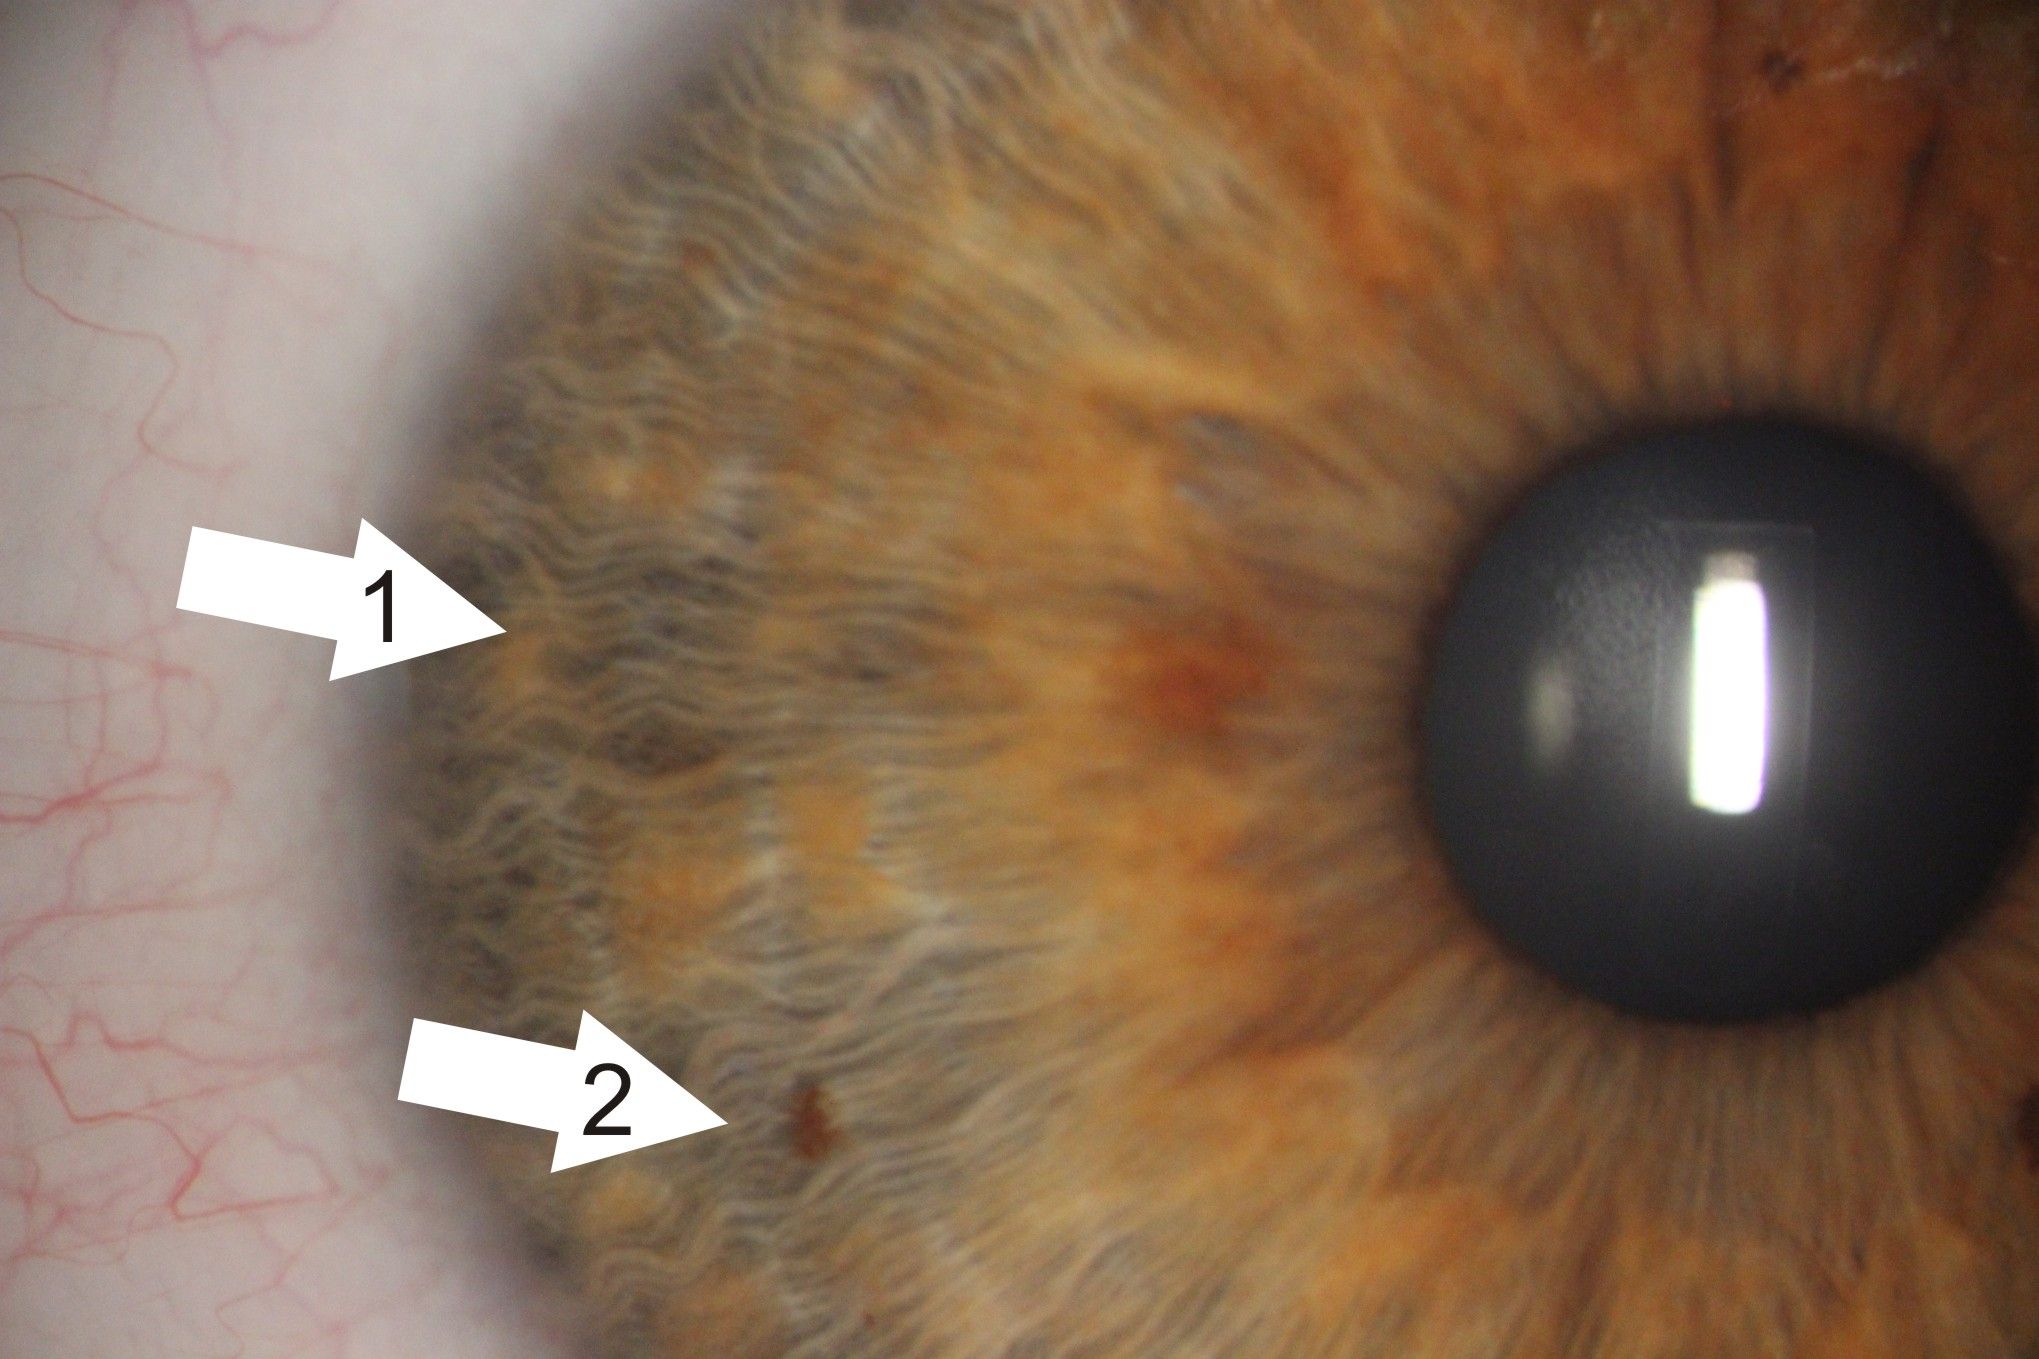 Zdjęcie tęczówki oka z bardzo bliska, widać każde włókno tęczówki. Są zaznaczone dwie białe strzałki wskazujące zmiany na tęczówce.